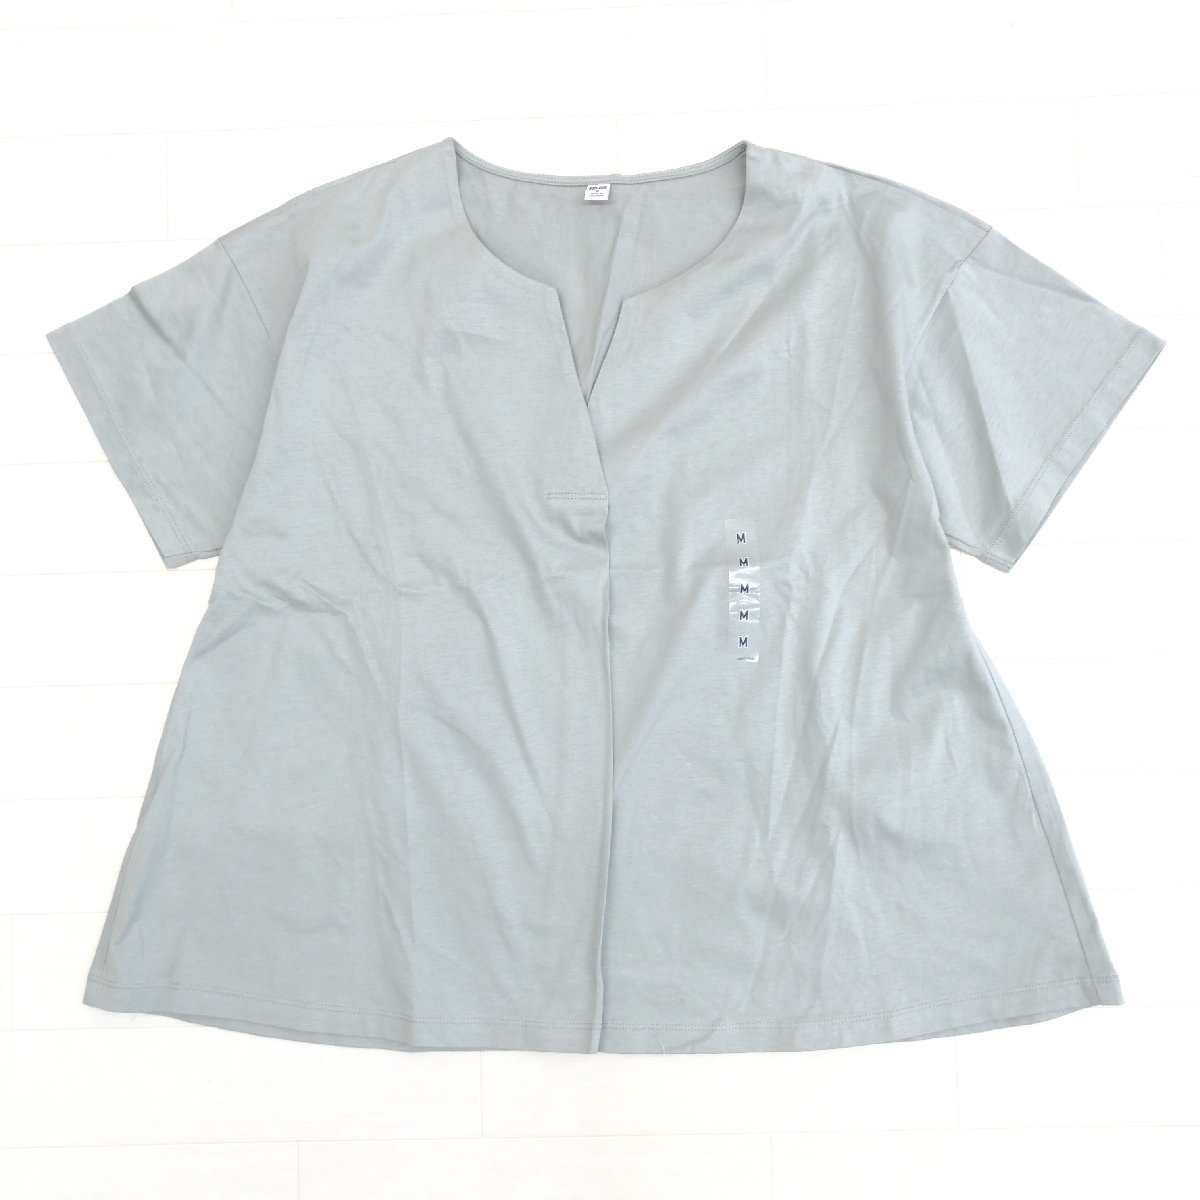 新品 UNIQLO ユニクロ マーセライズ コットン キーネック Tシャツ M グレー 半袖 プルオーバー カットソー 国内正規品 レディース 女性用